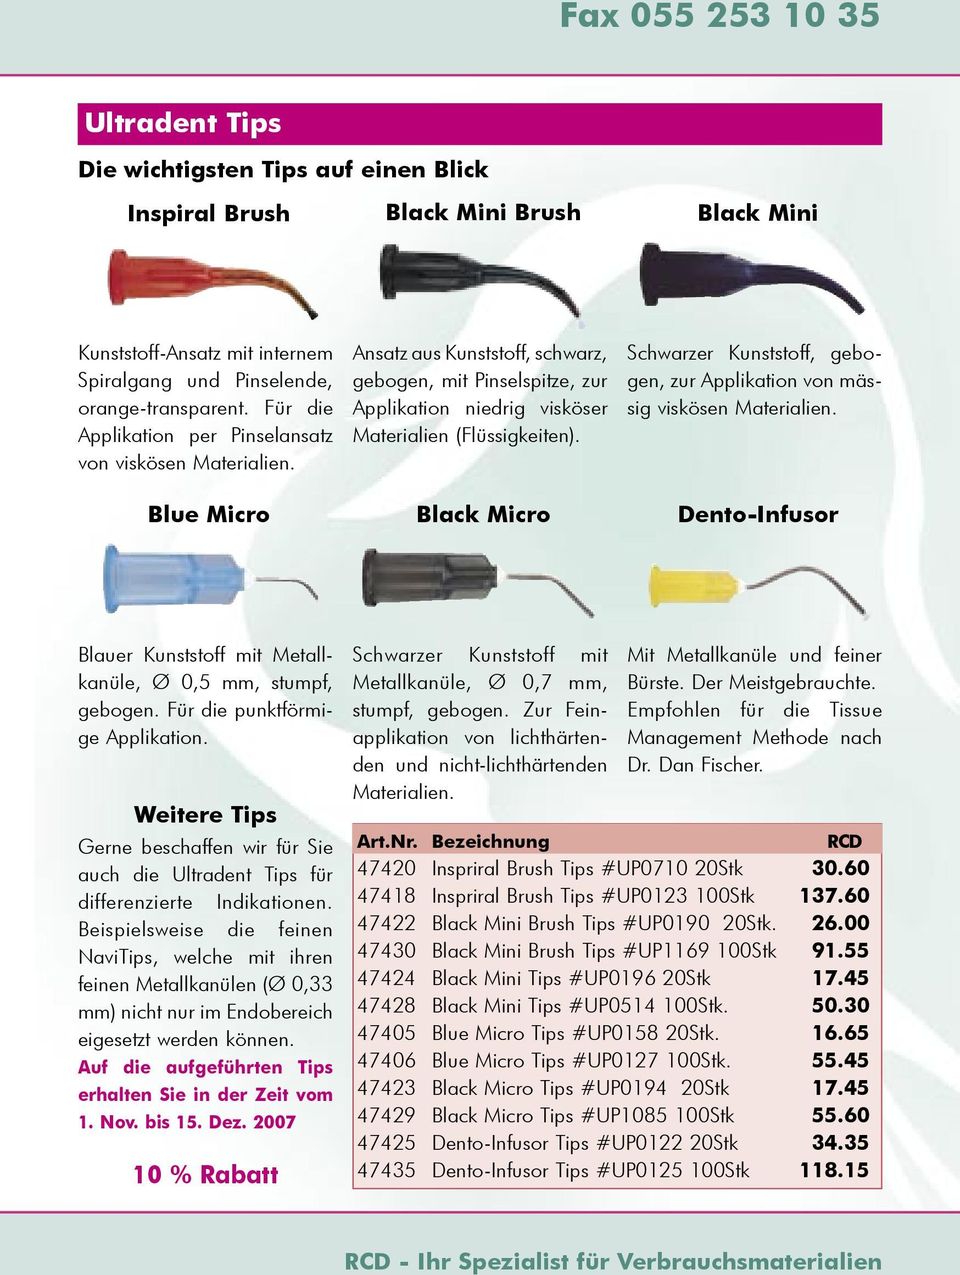 Black Micro Schwarzer Kunststoff, gebogen, zur Applikation von mässig viskösen Materialien. Dento-Infusor Blauer Kunststoff mit Metallkanüle, Ø 0,5 mm, stumpf, gebogen.